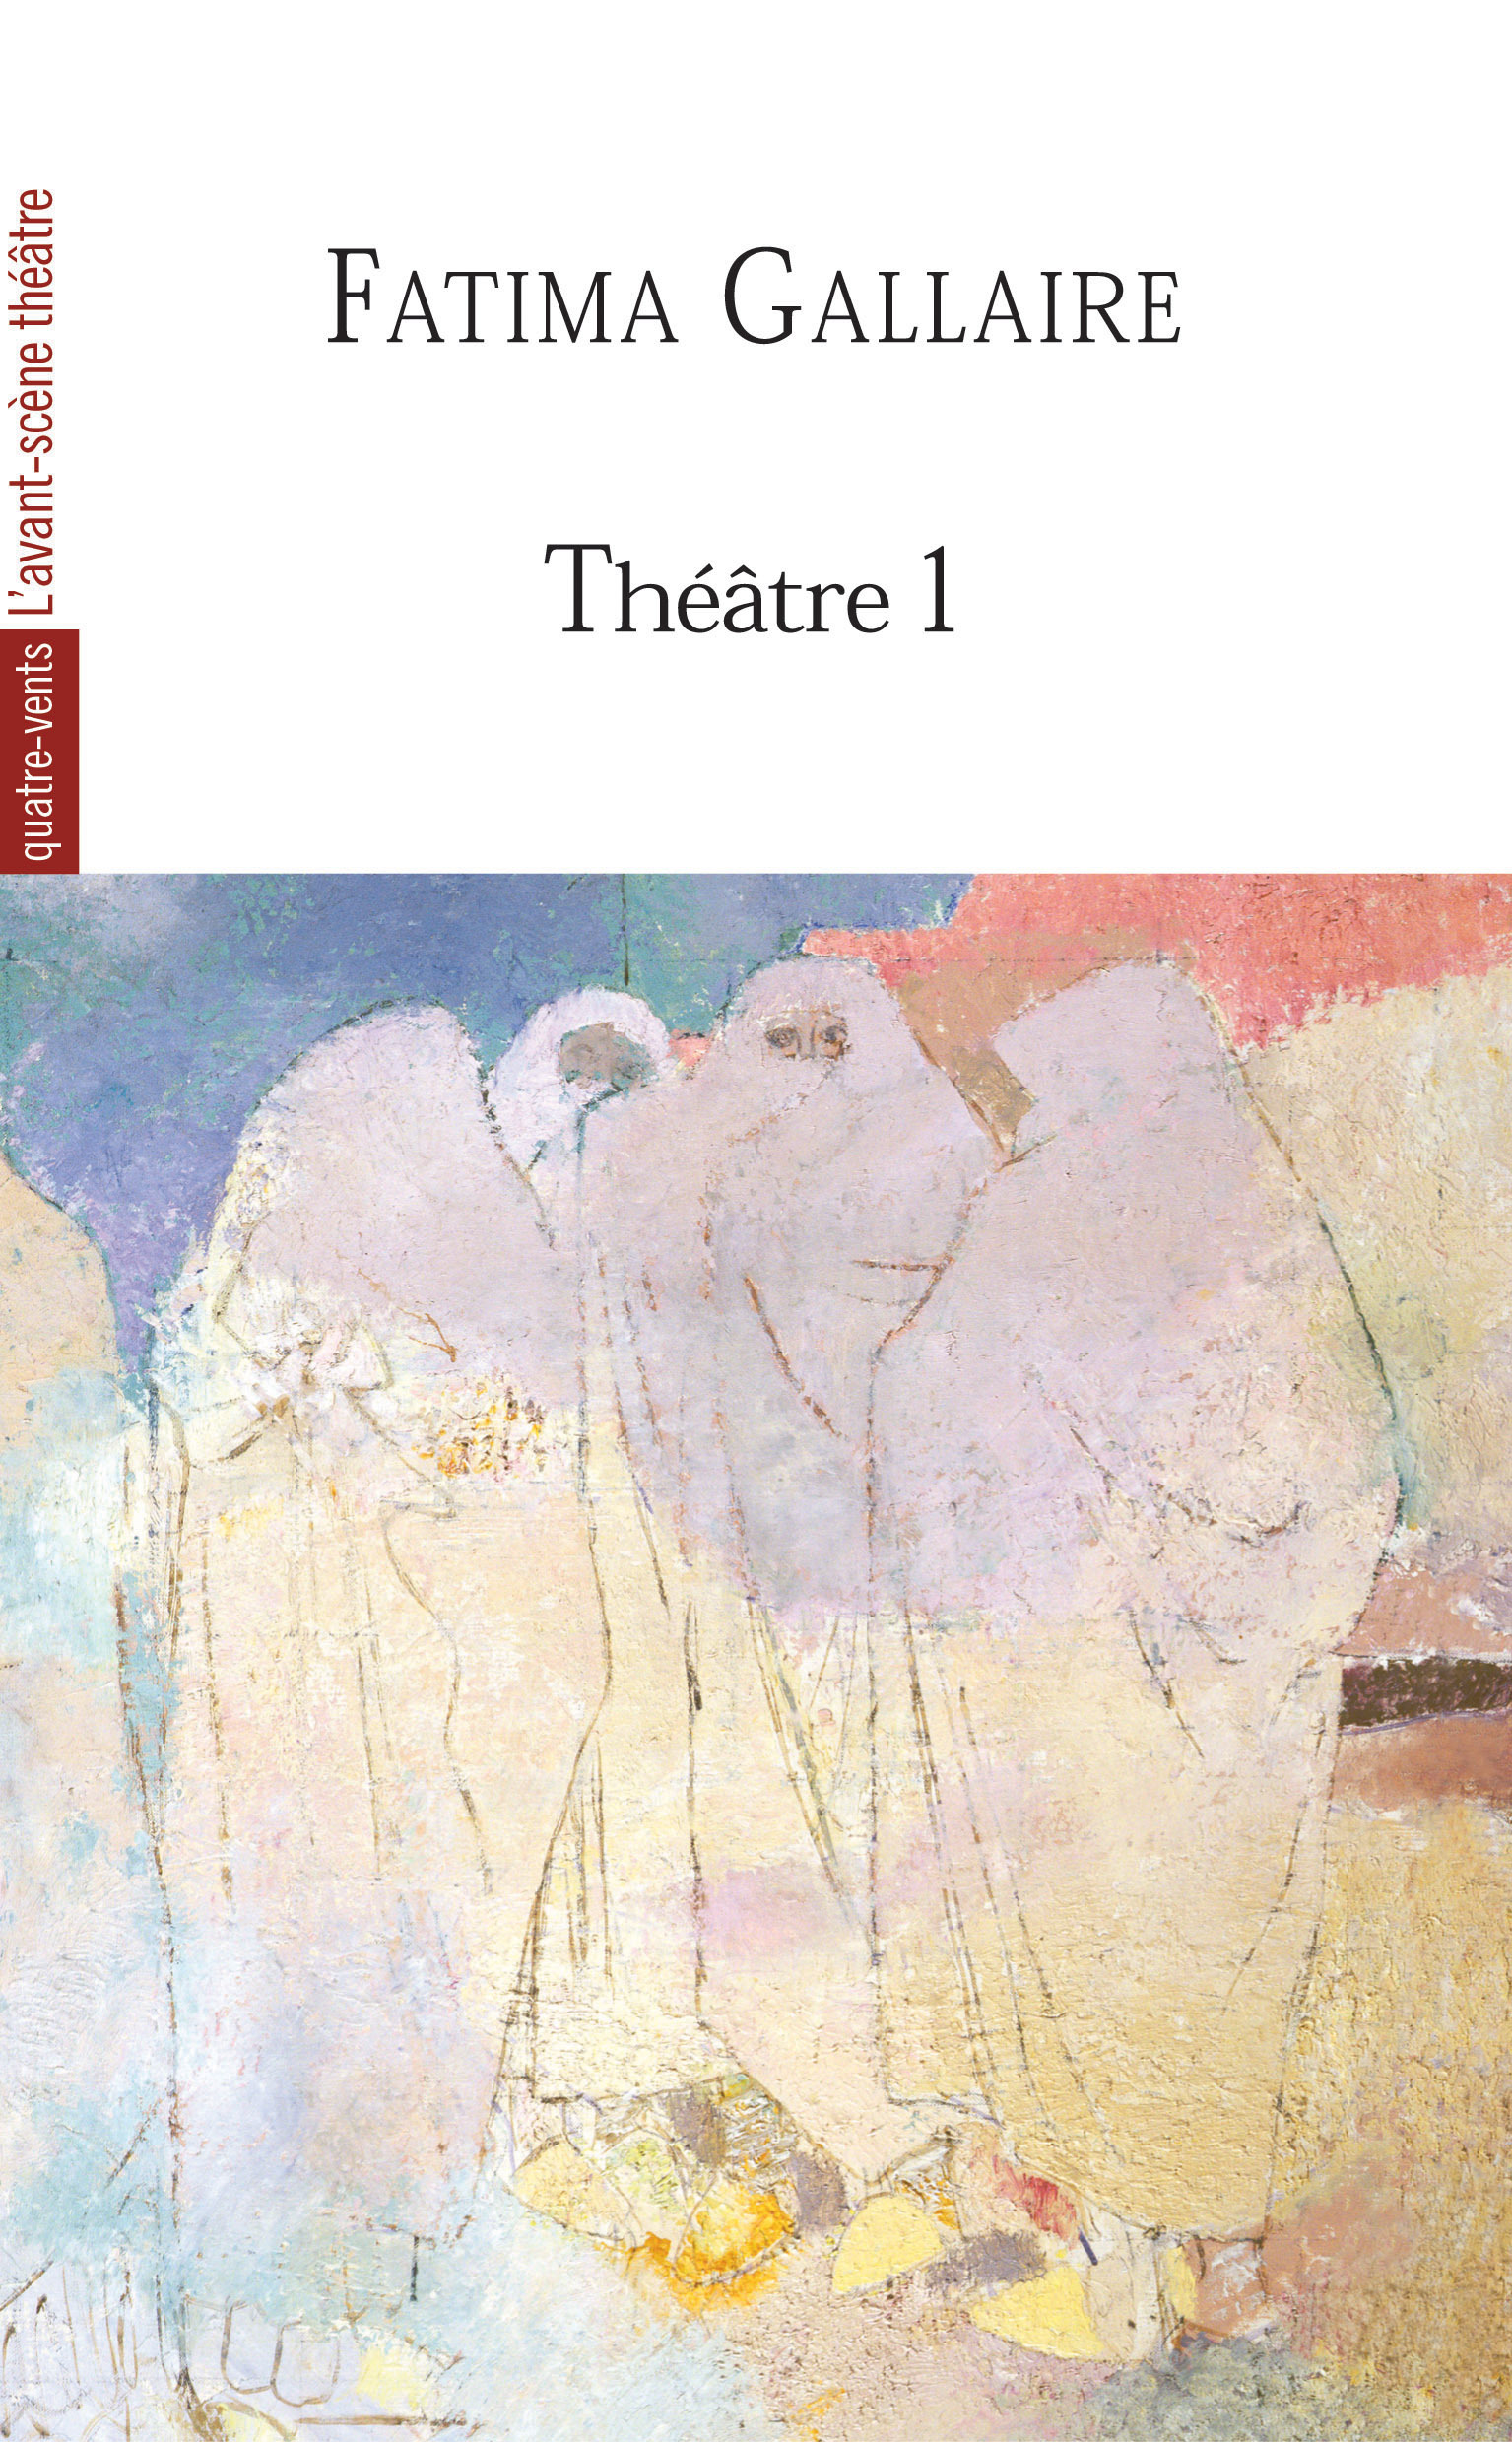 Théâtre 1 (Fatima Gallaire), Princesses / la Fete Virile / les Co-Epouses (9782749809281-front-cover)